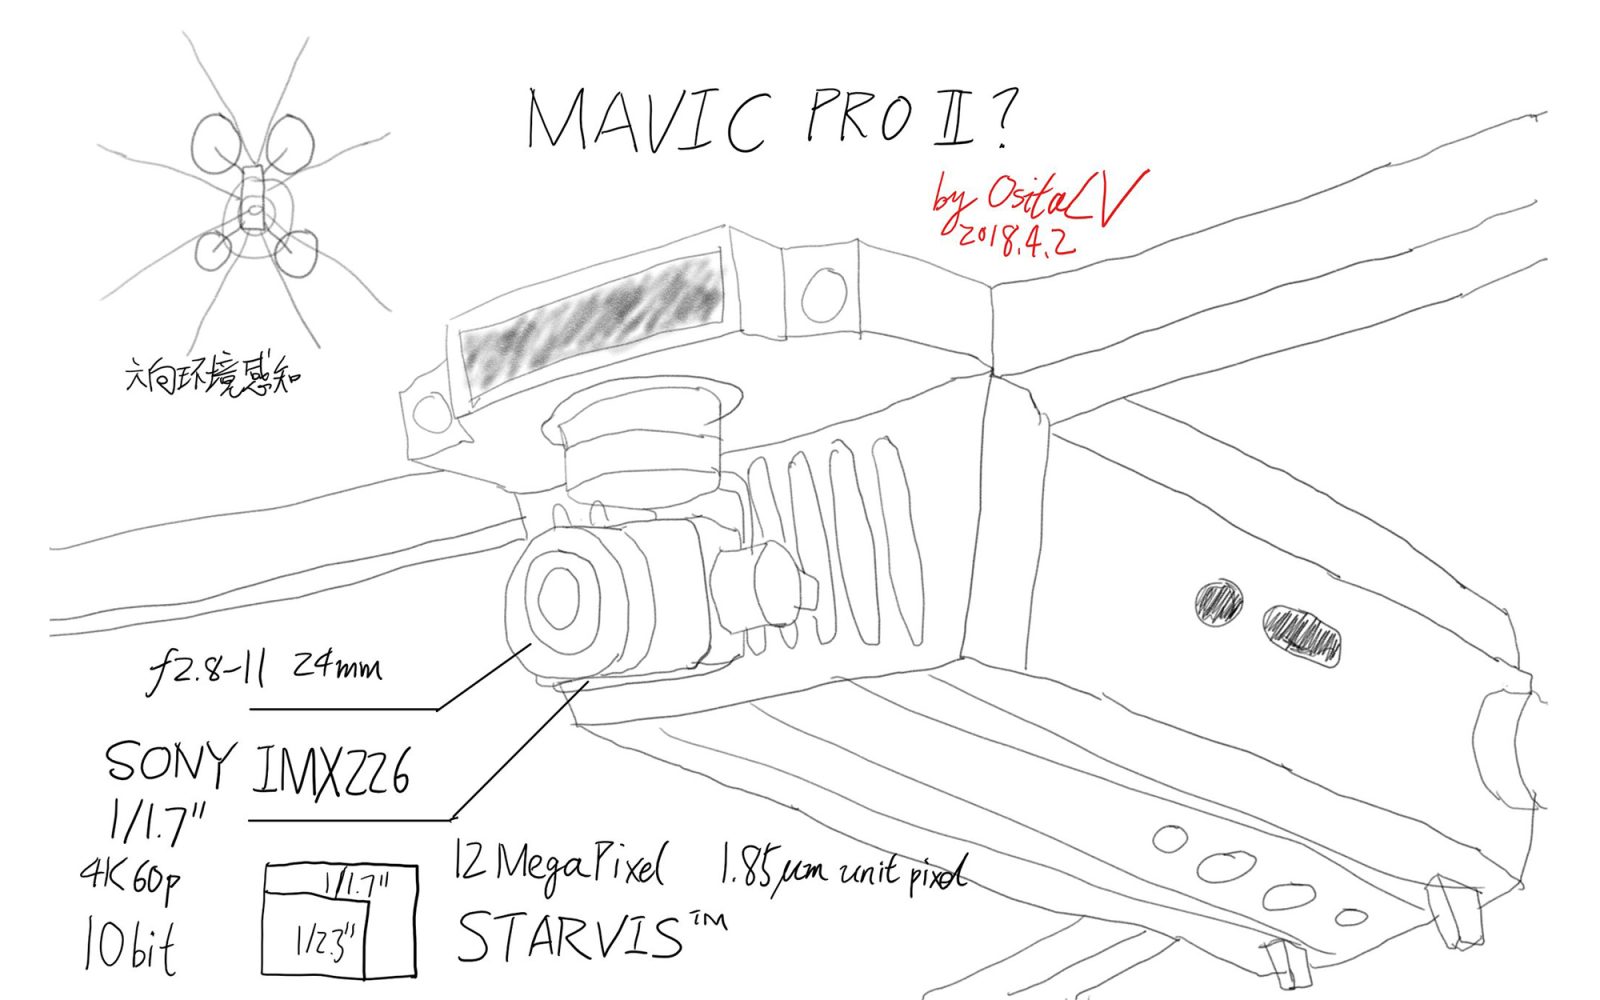 More details on rumored Sony image sensor for DJI Mavic Pro II (2)